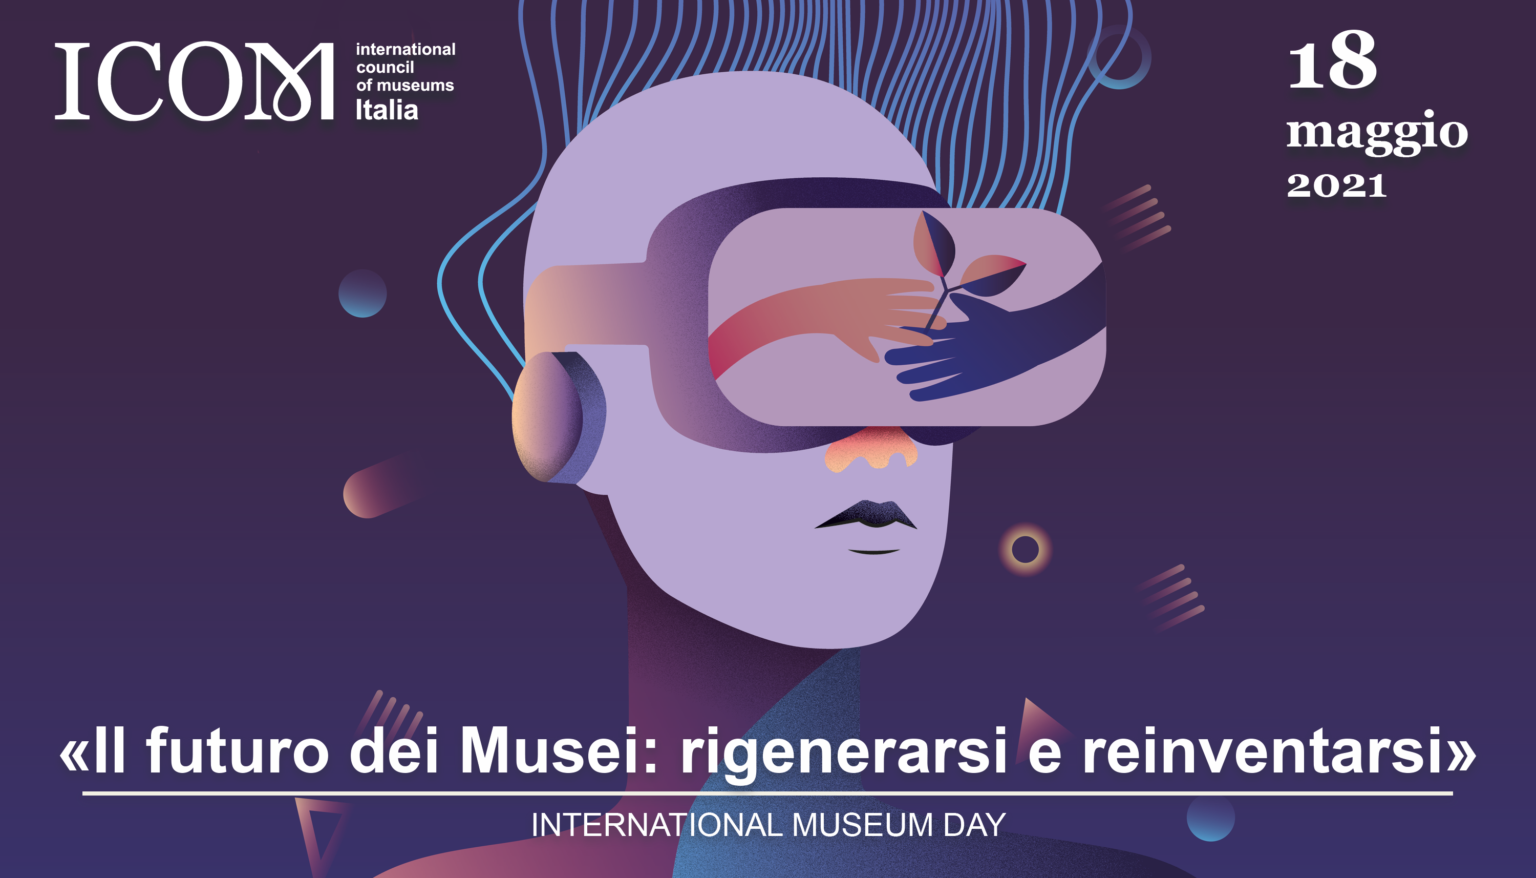 Anche MuPIn aderisce alla Giornata Internazionale dei Musei – International Museum Day che si celebra il 18 maggio 2021